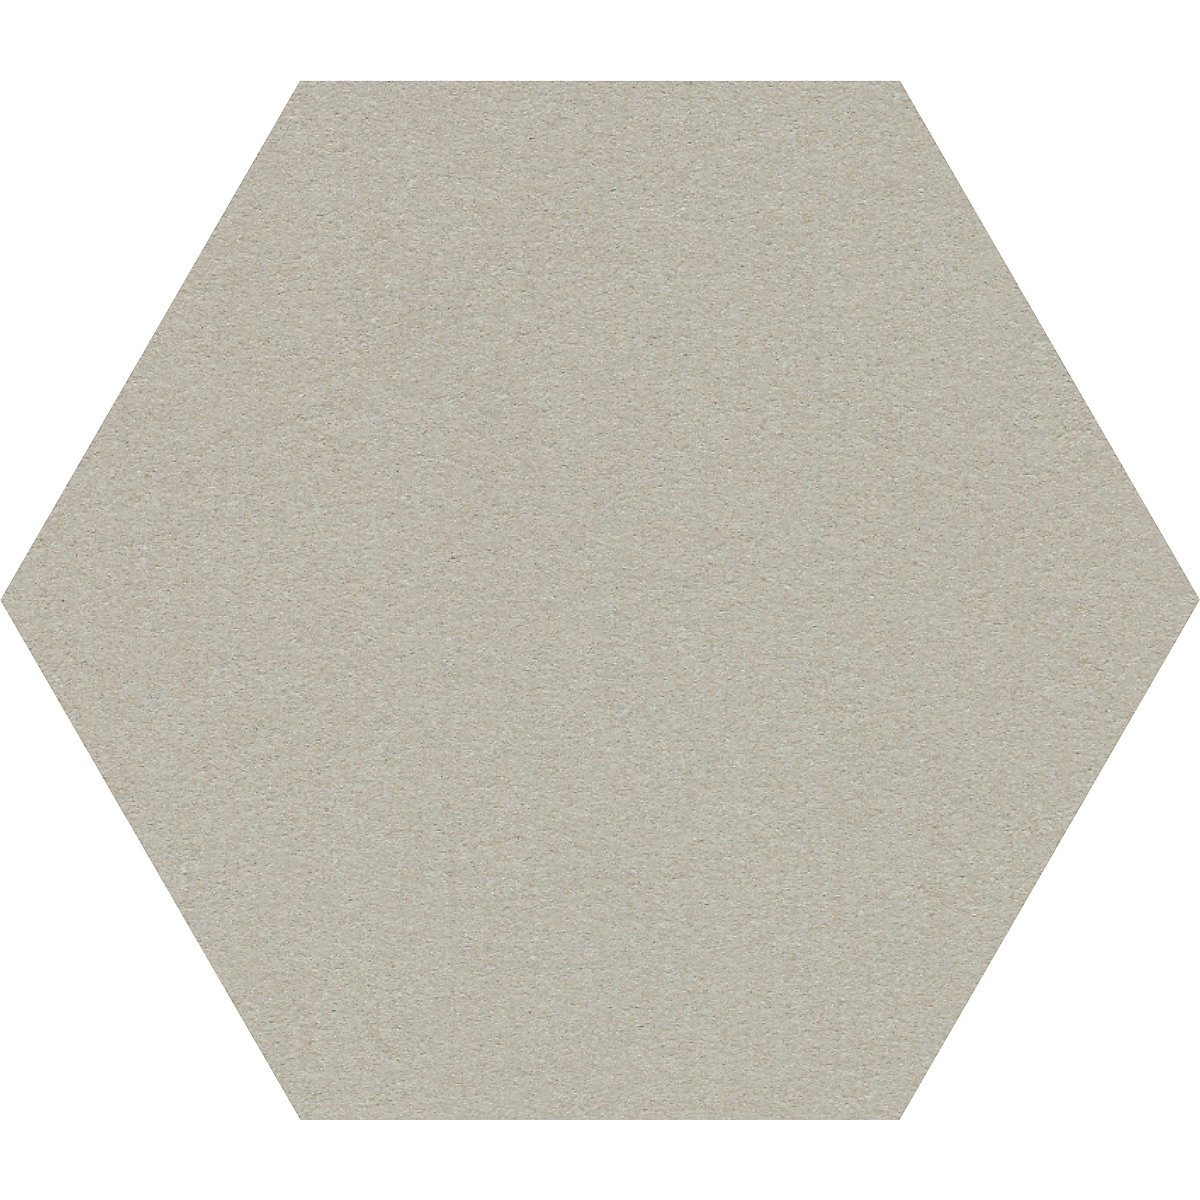 Tablón hexagonal de diseño para chinchetas – Chameleon, corcho, A x H 600 x 600 mm, gris claro-27